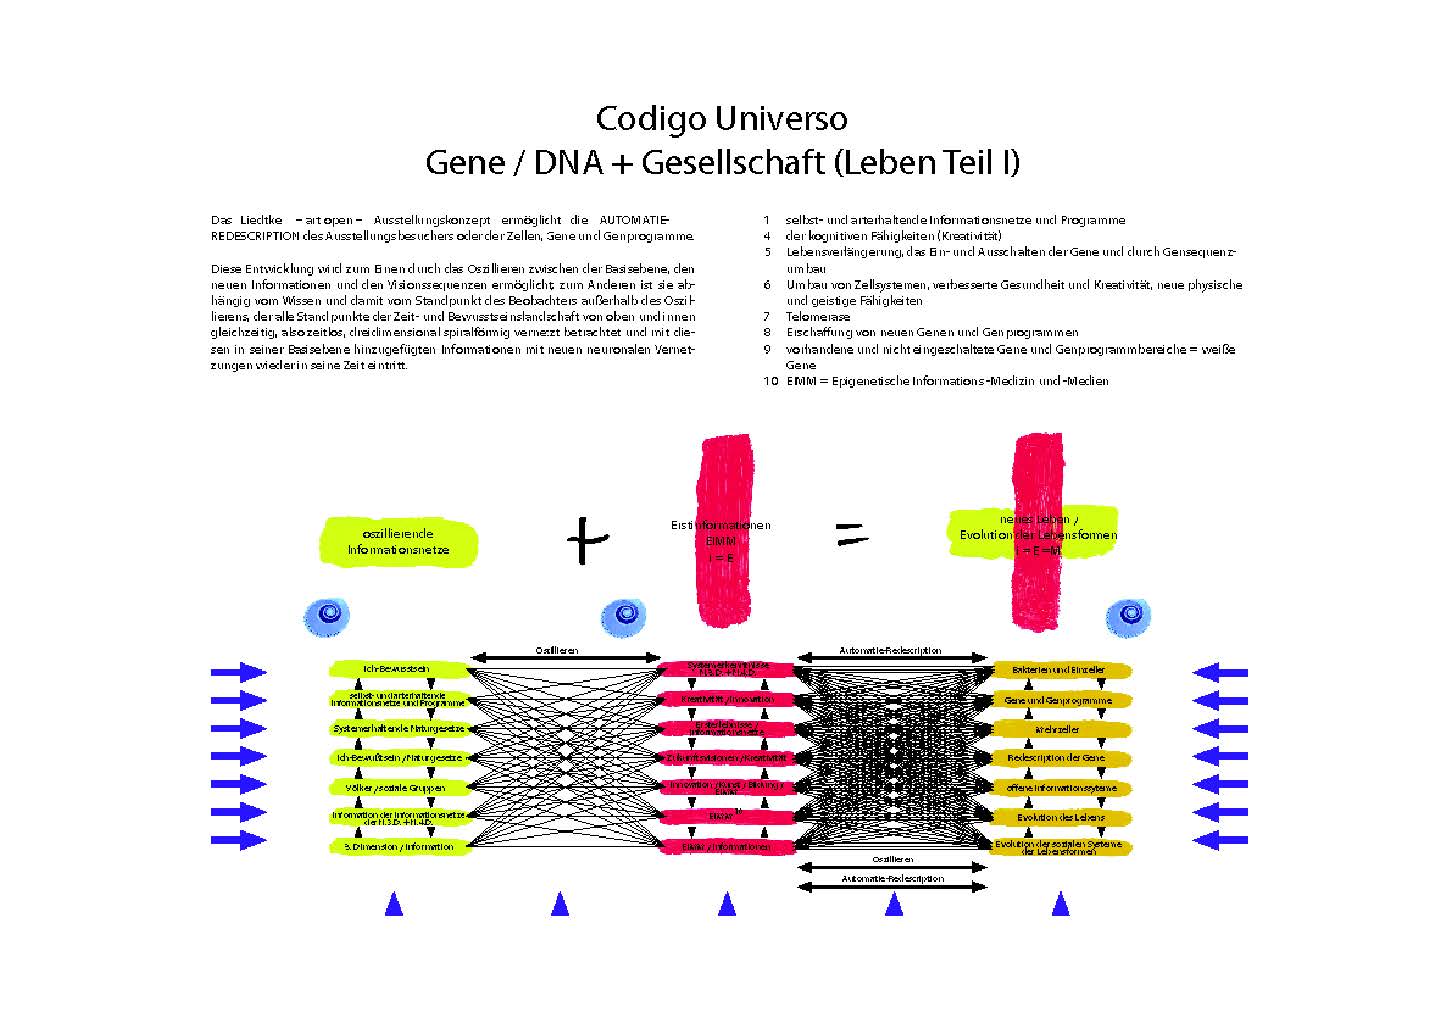 GENE - DNA